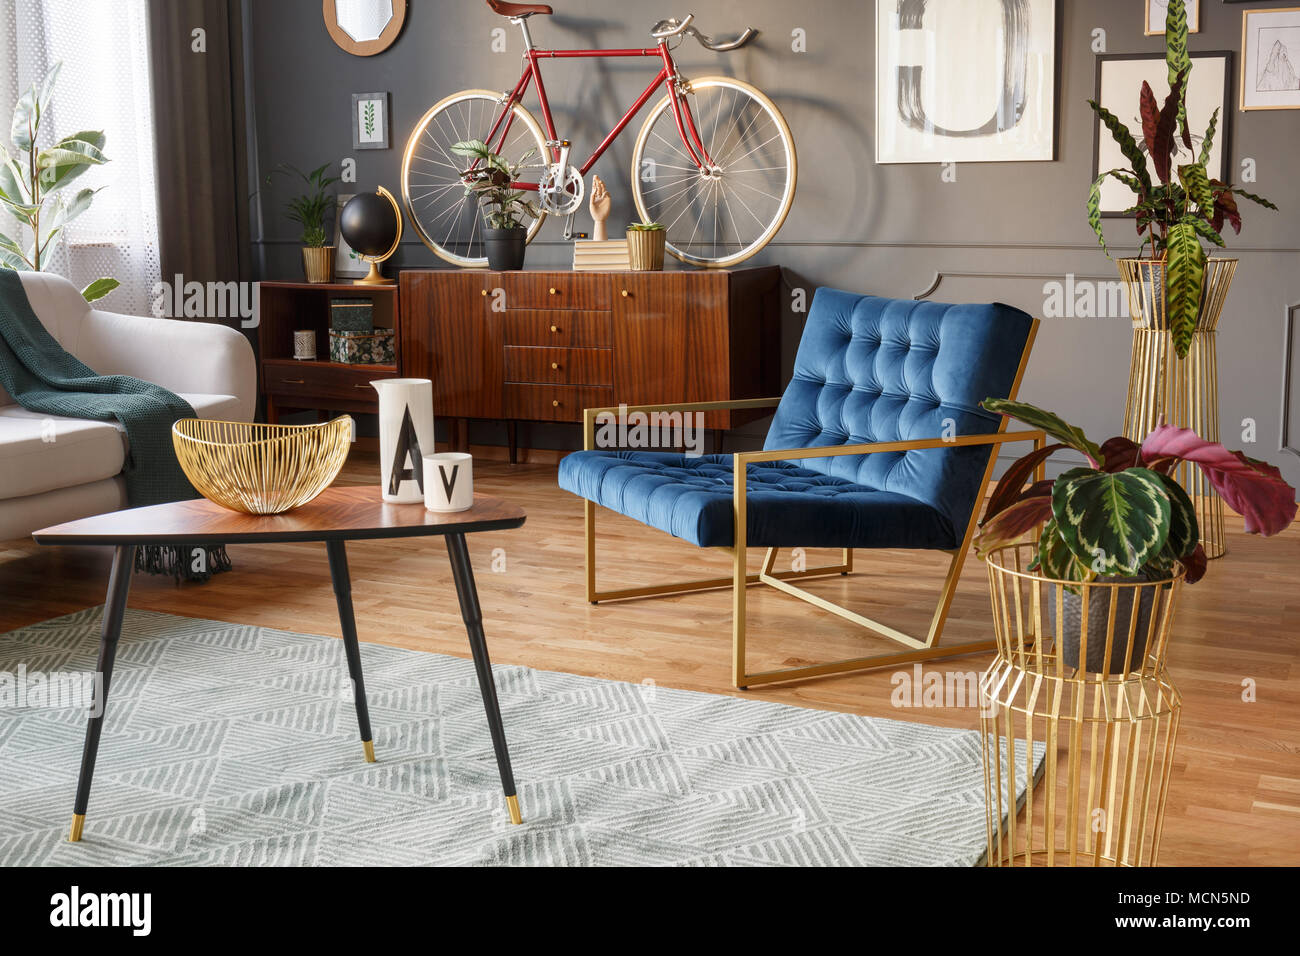 Plantes en pots d'or, table basse en bois avec décorations et fauteuil bleu dans un salon vintage interior Banque D'Images